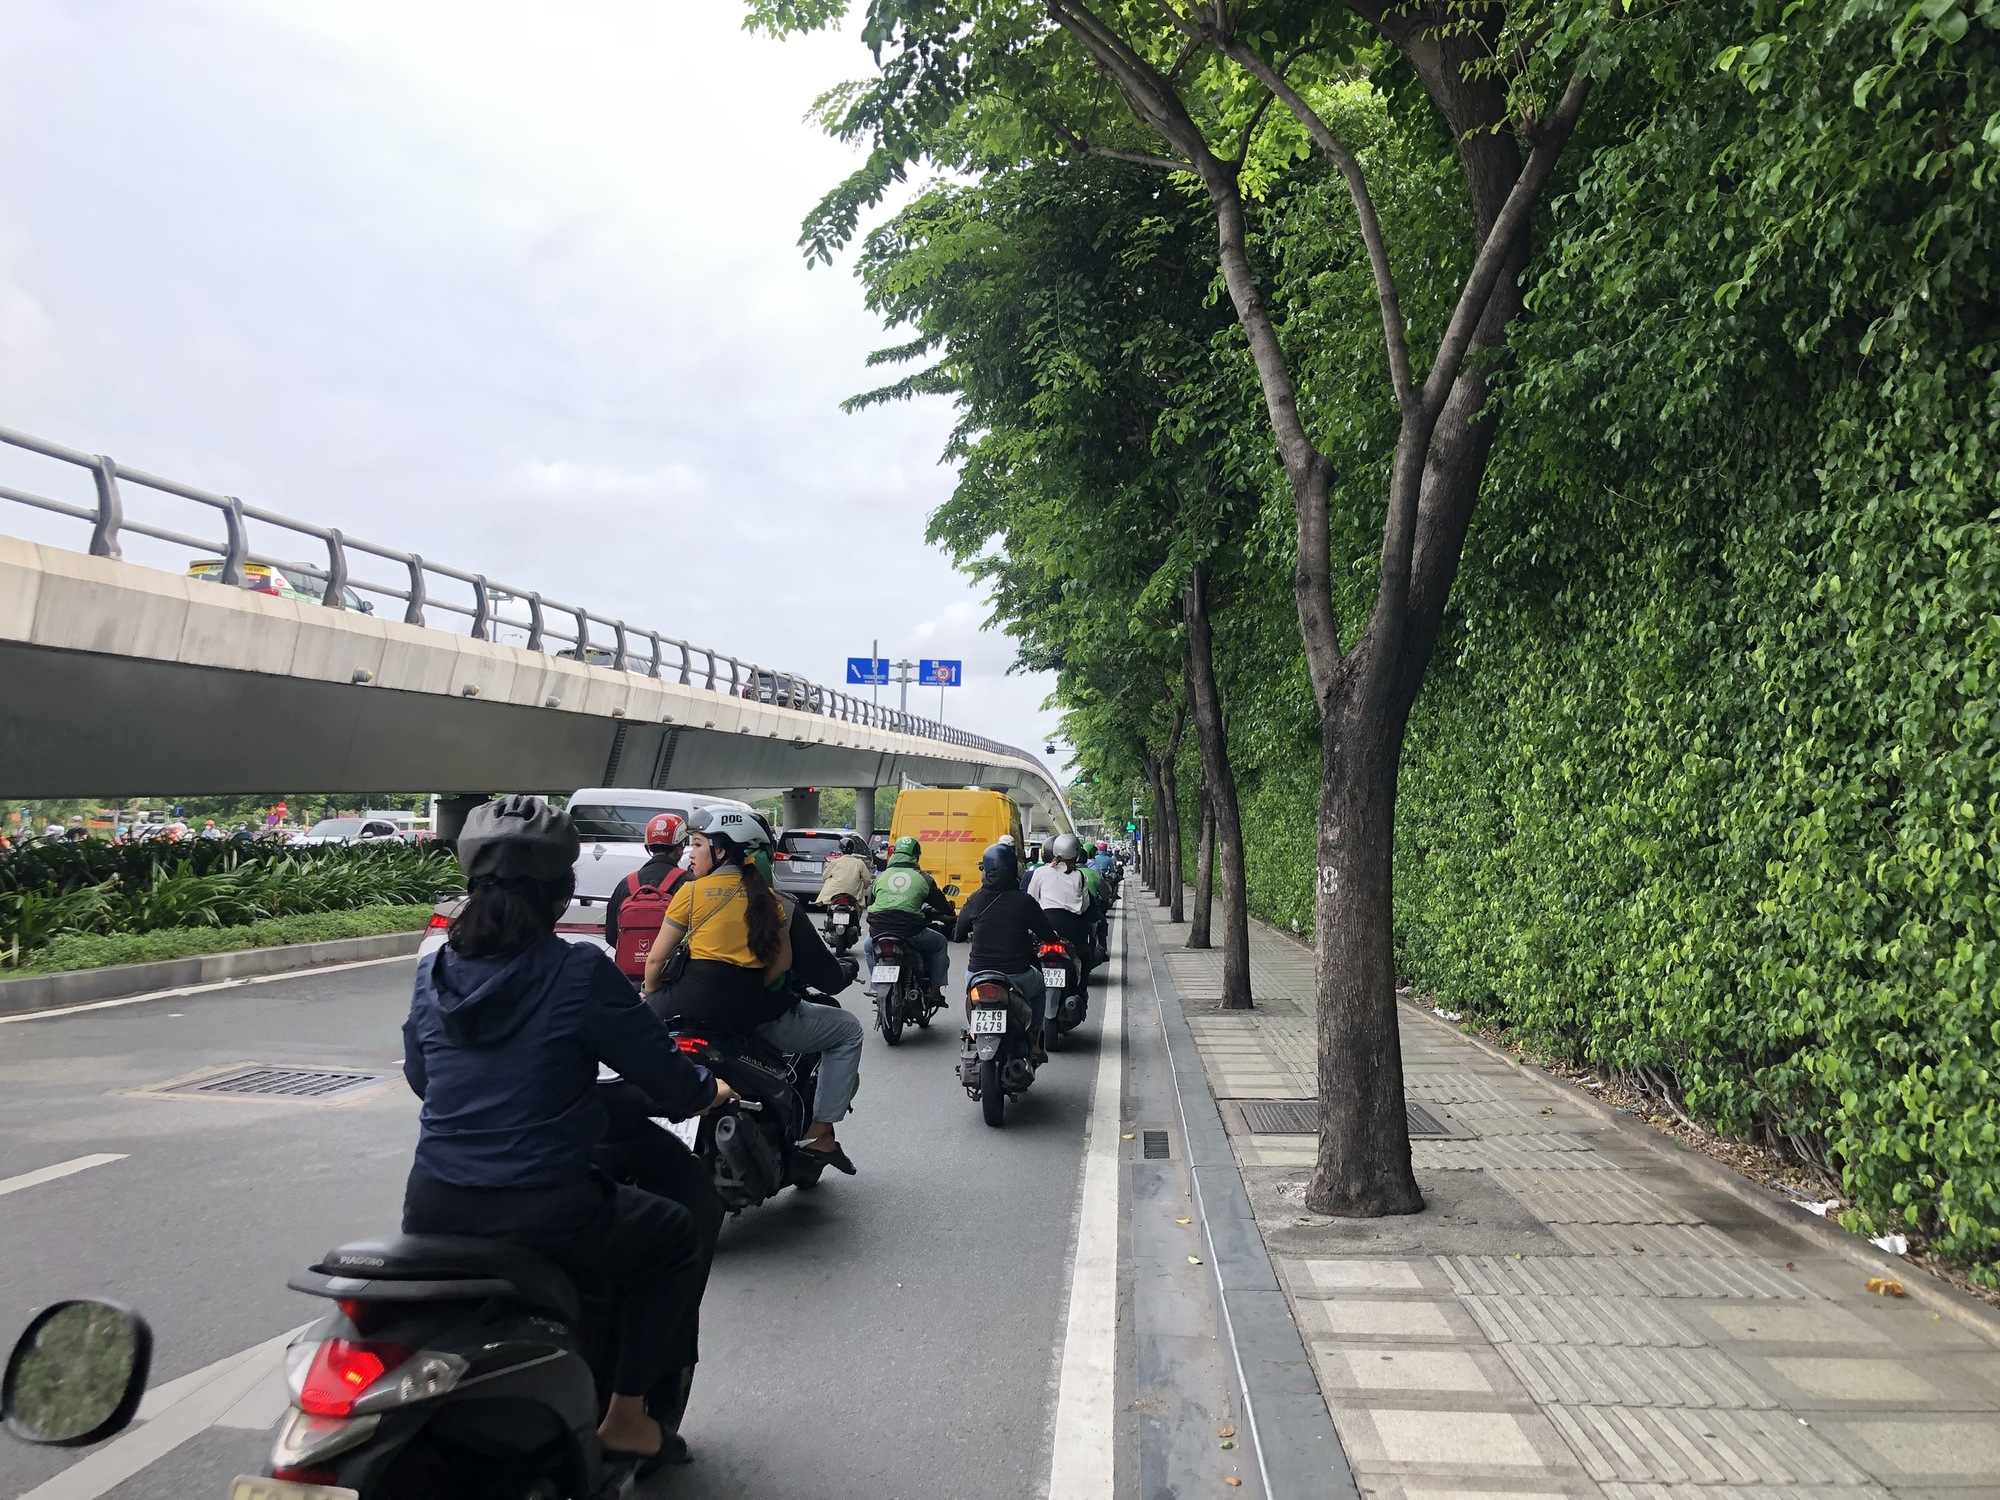 Hàng cây trên đường vào sân bay Tân Sơn Nhất bị bít đường lớn - Ảnh 1.